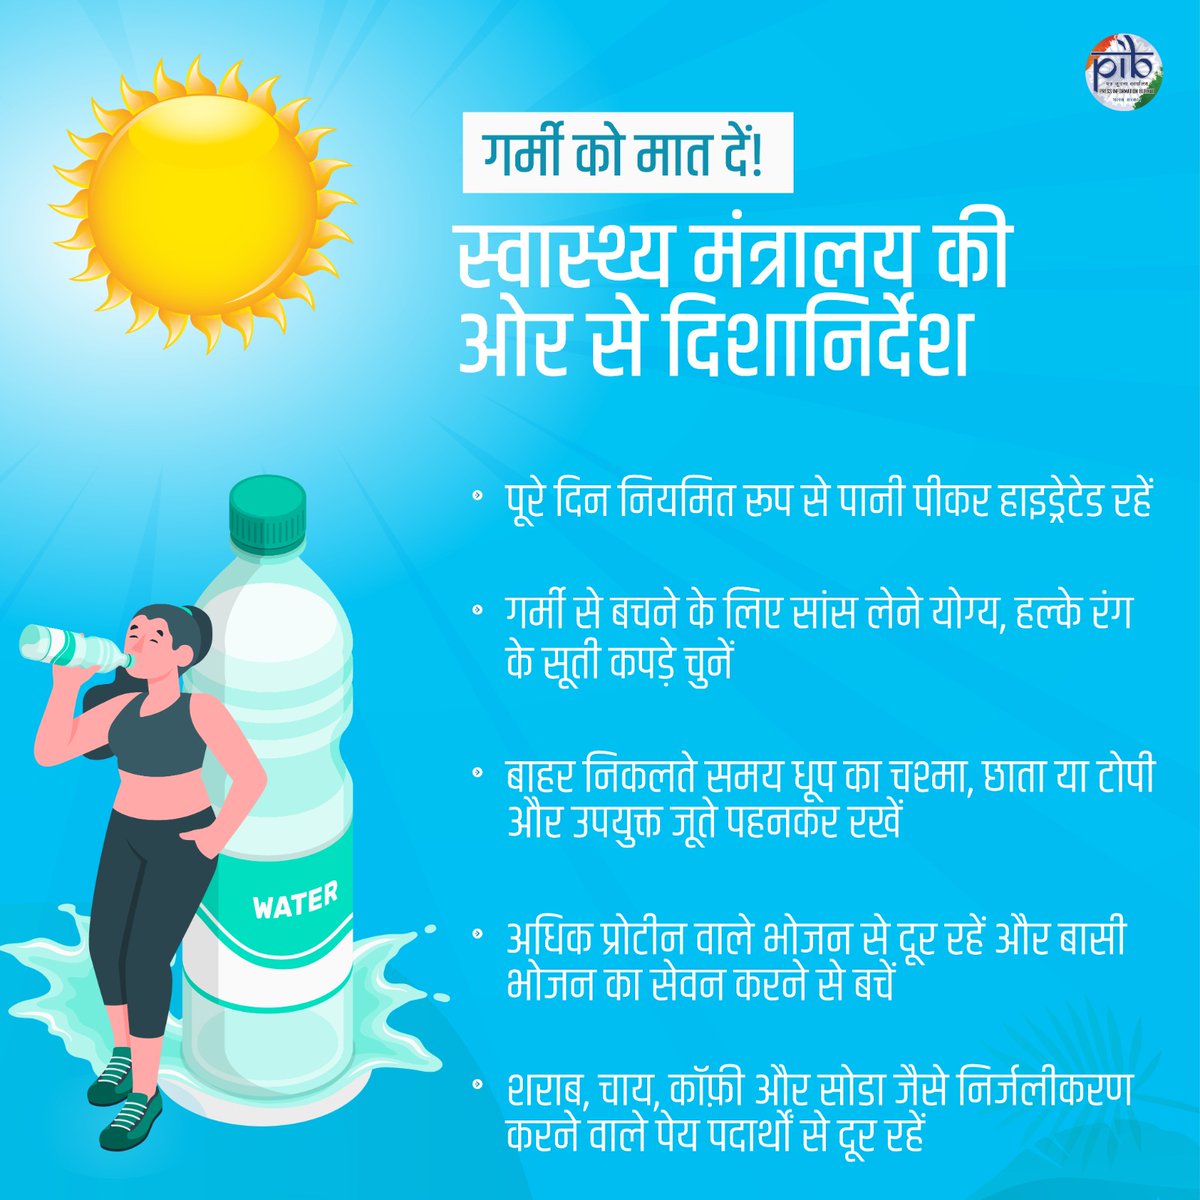 #BeatTheHeat #HeatWave हीटवेव/भीषण गर्मी से बचाव के लिए @MoHFW_INDIA ने जारी किए दिशानिर्देश👇 ✅पूरे दिन नियमित रूप से पानी पीकर हाइड्रेटेड रहें ✅गर्मी से बचने के लिए सांस लेने योग्य, हल्के रंग के सूती कपड़े चुनें